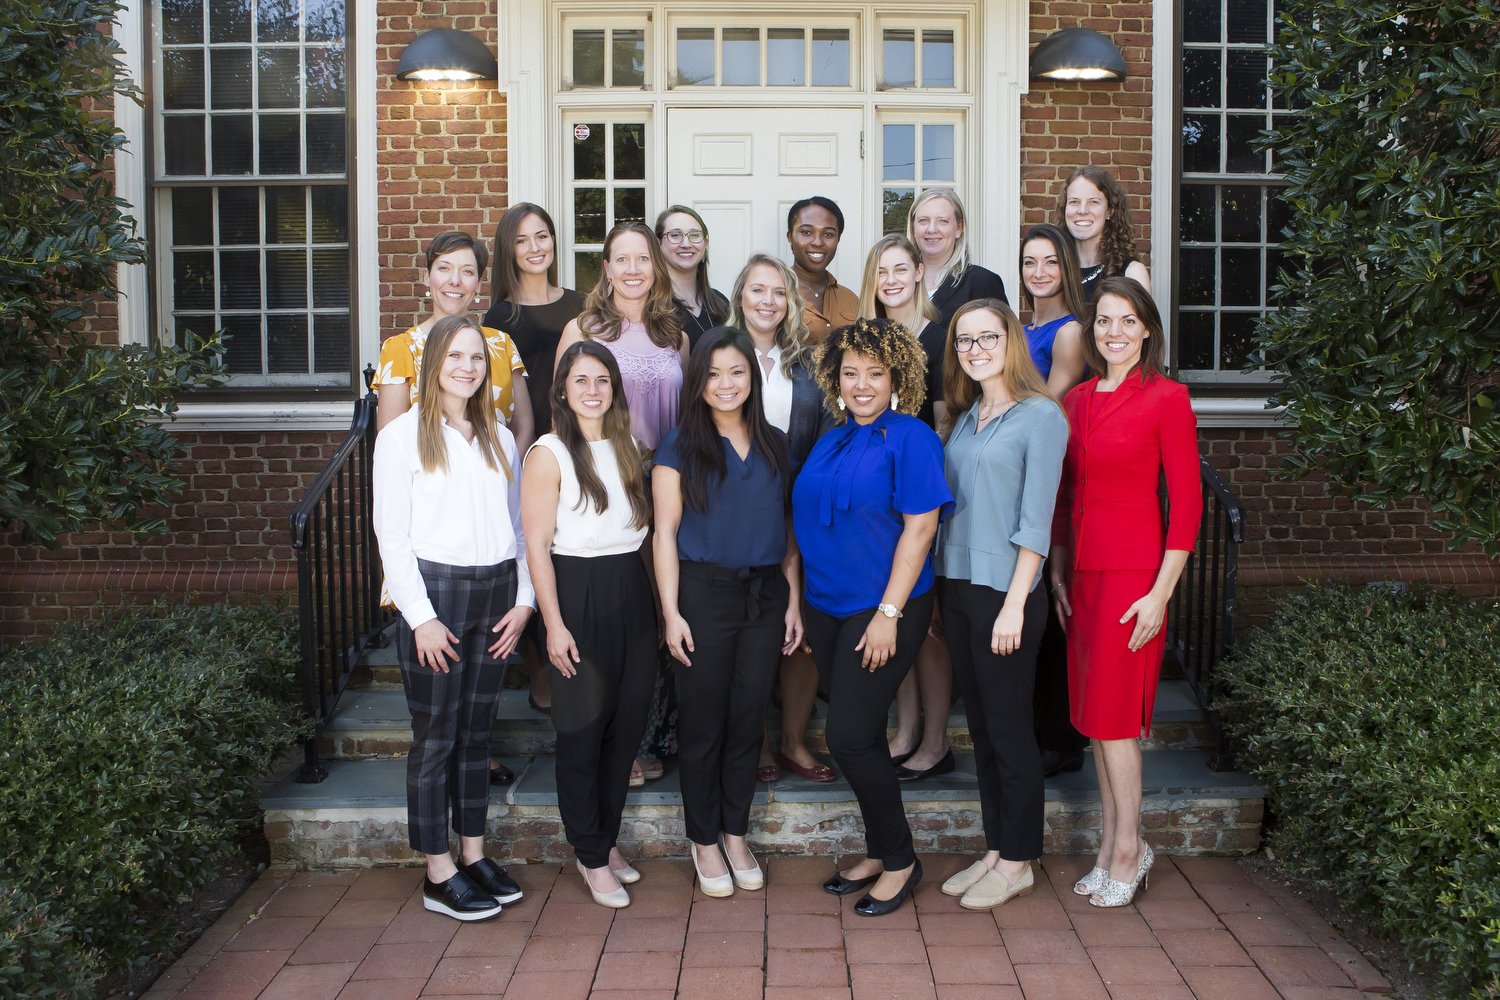  The Duke University Physicians Assistant program Stead Society members on September 17, 2019. 